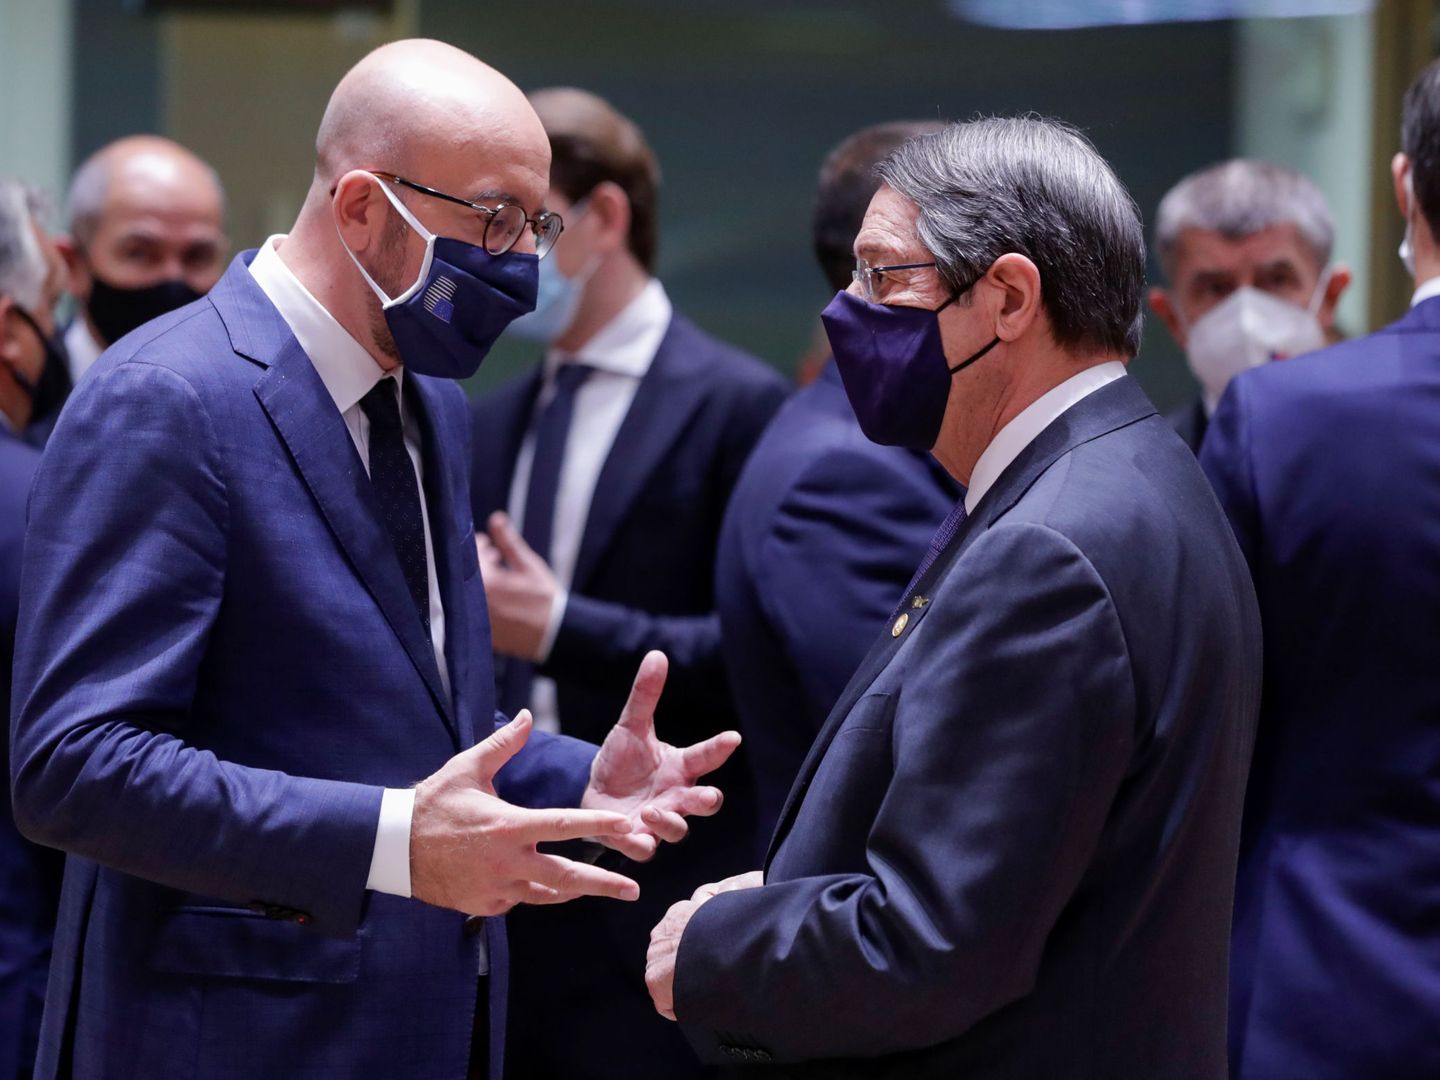 Michel charla con el presidente chipriota antes del Consejo Europeo. (Reuters)